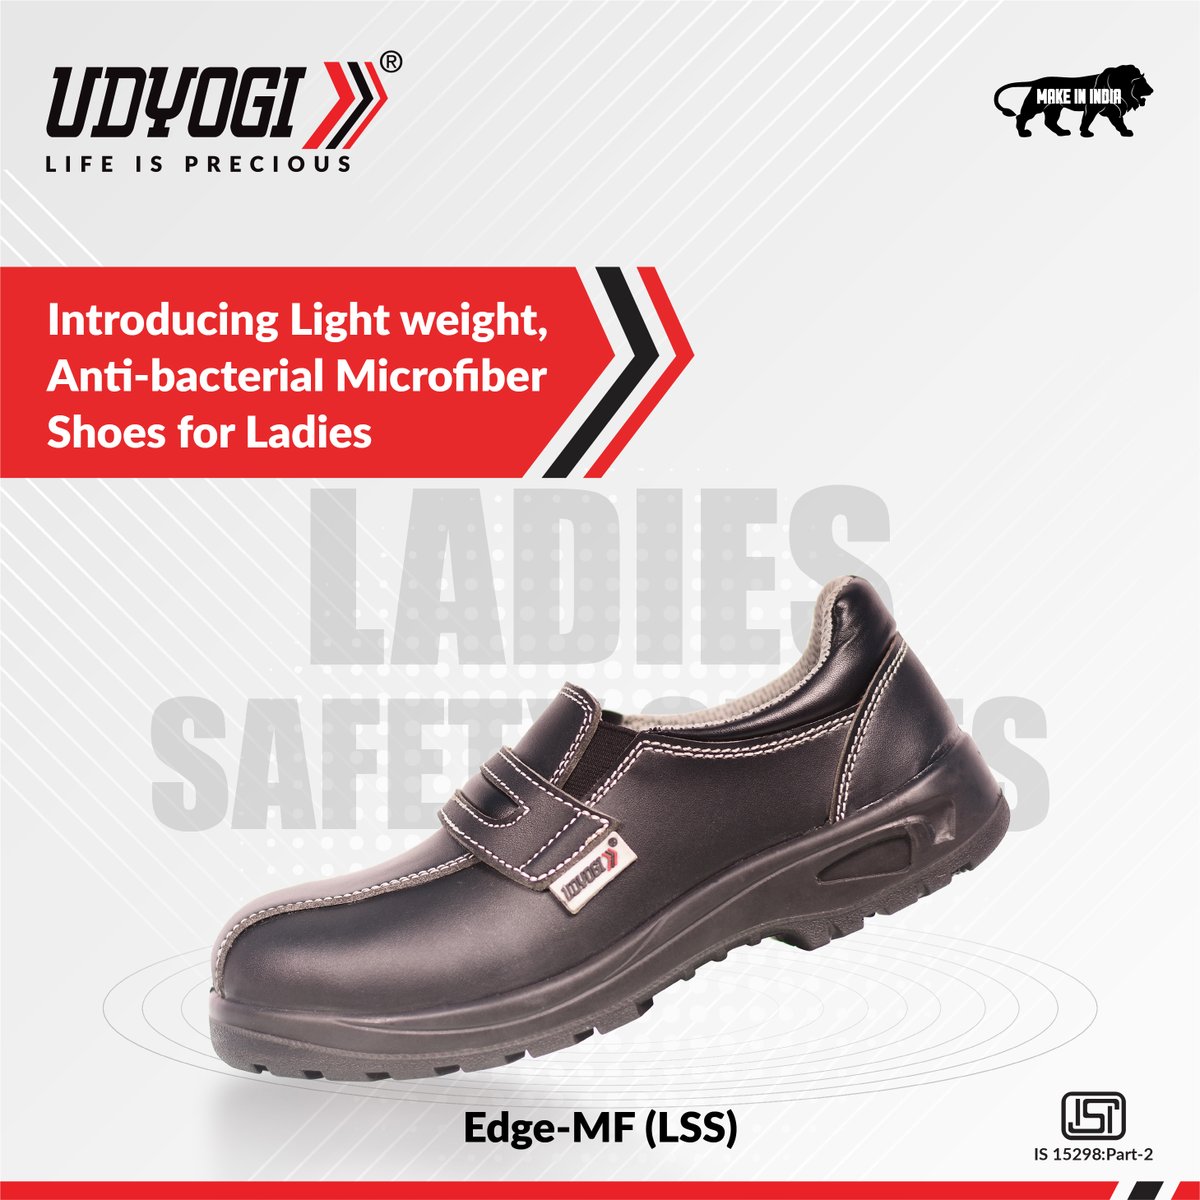 udyogi safety shoes